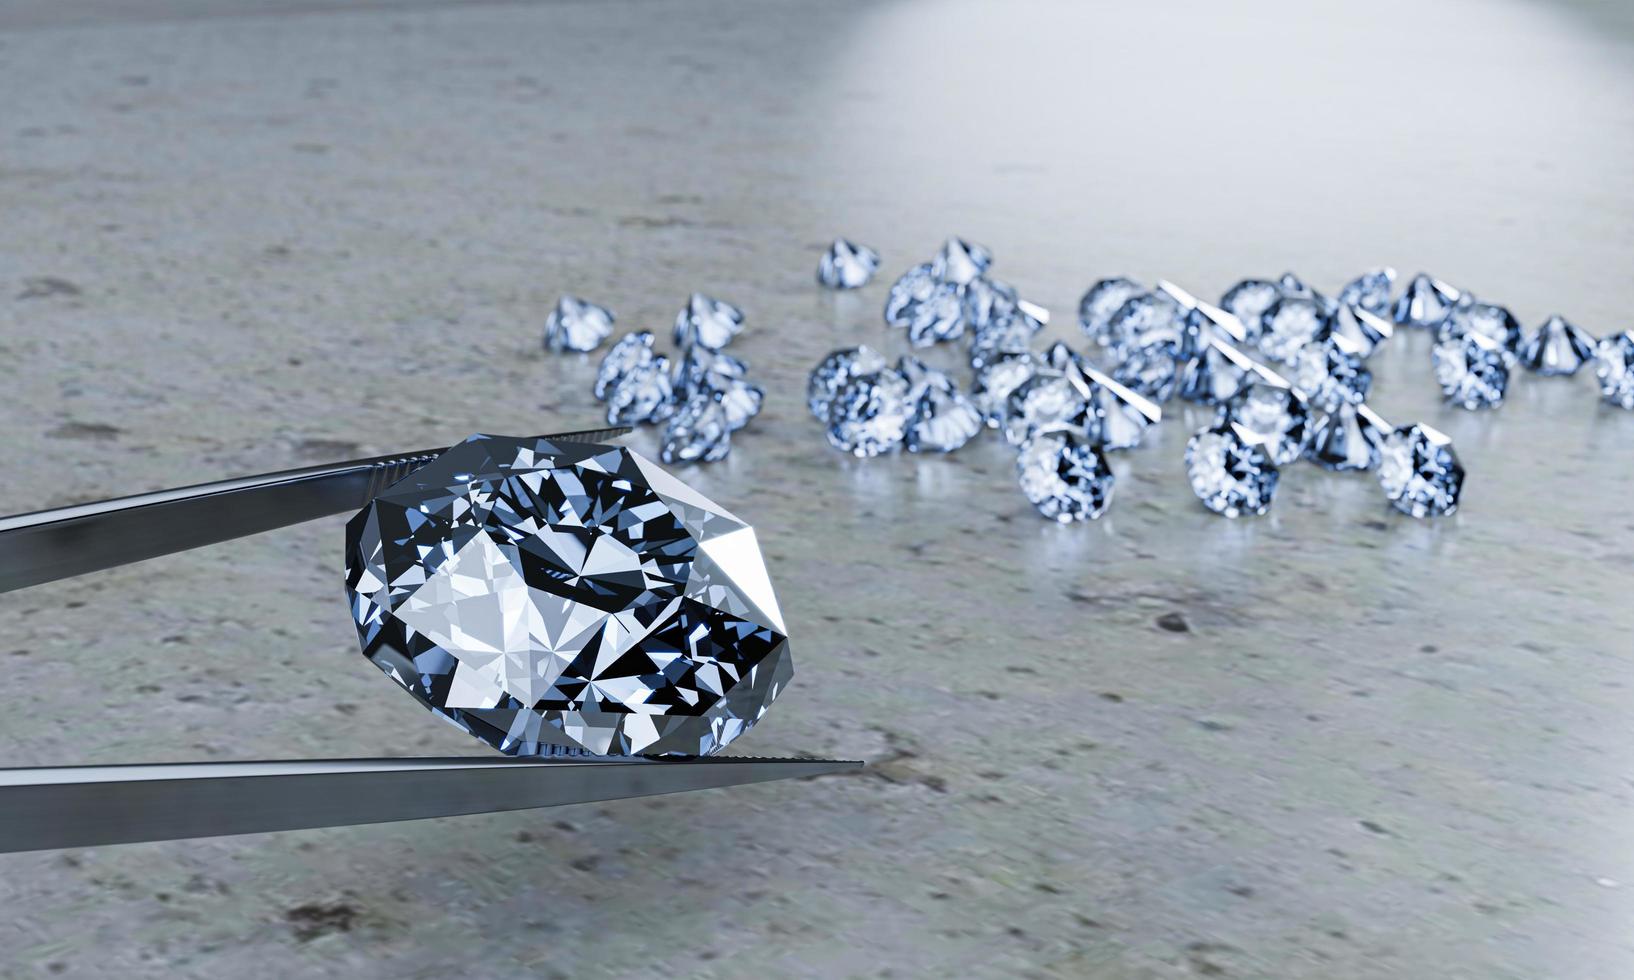 diamanten spänns fast med tång. massor av diamanter placerade på bordet som bakgrund. 3d-rendering foto